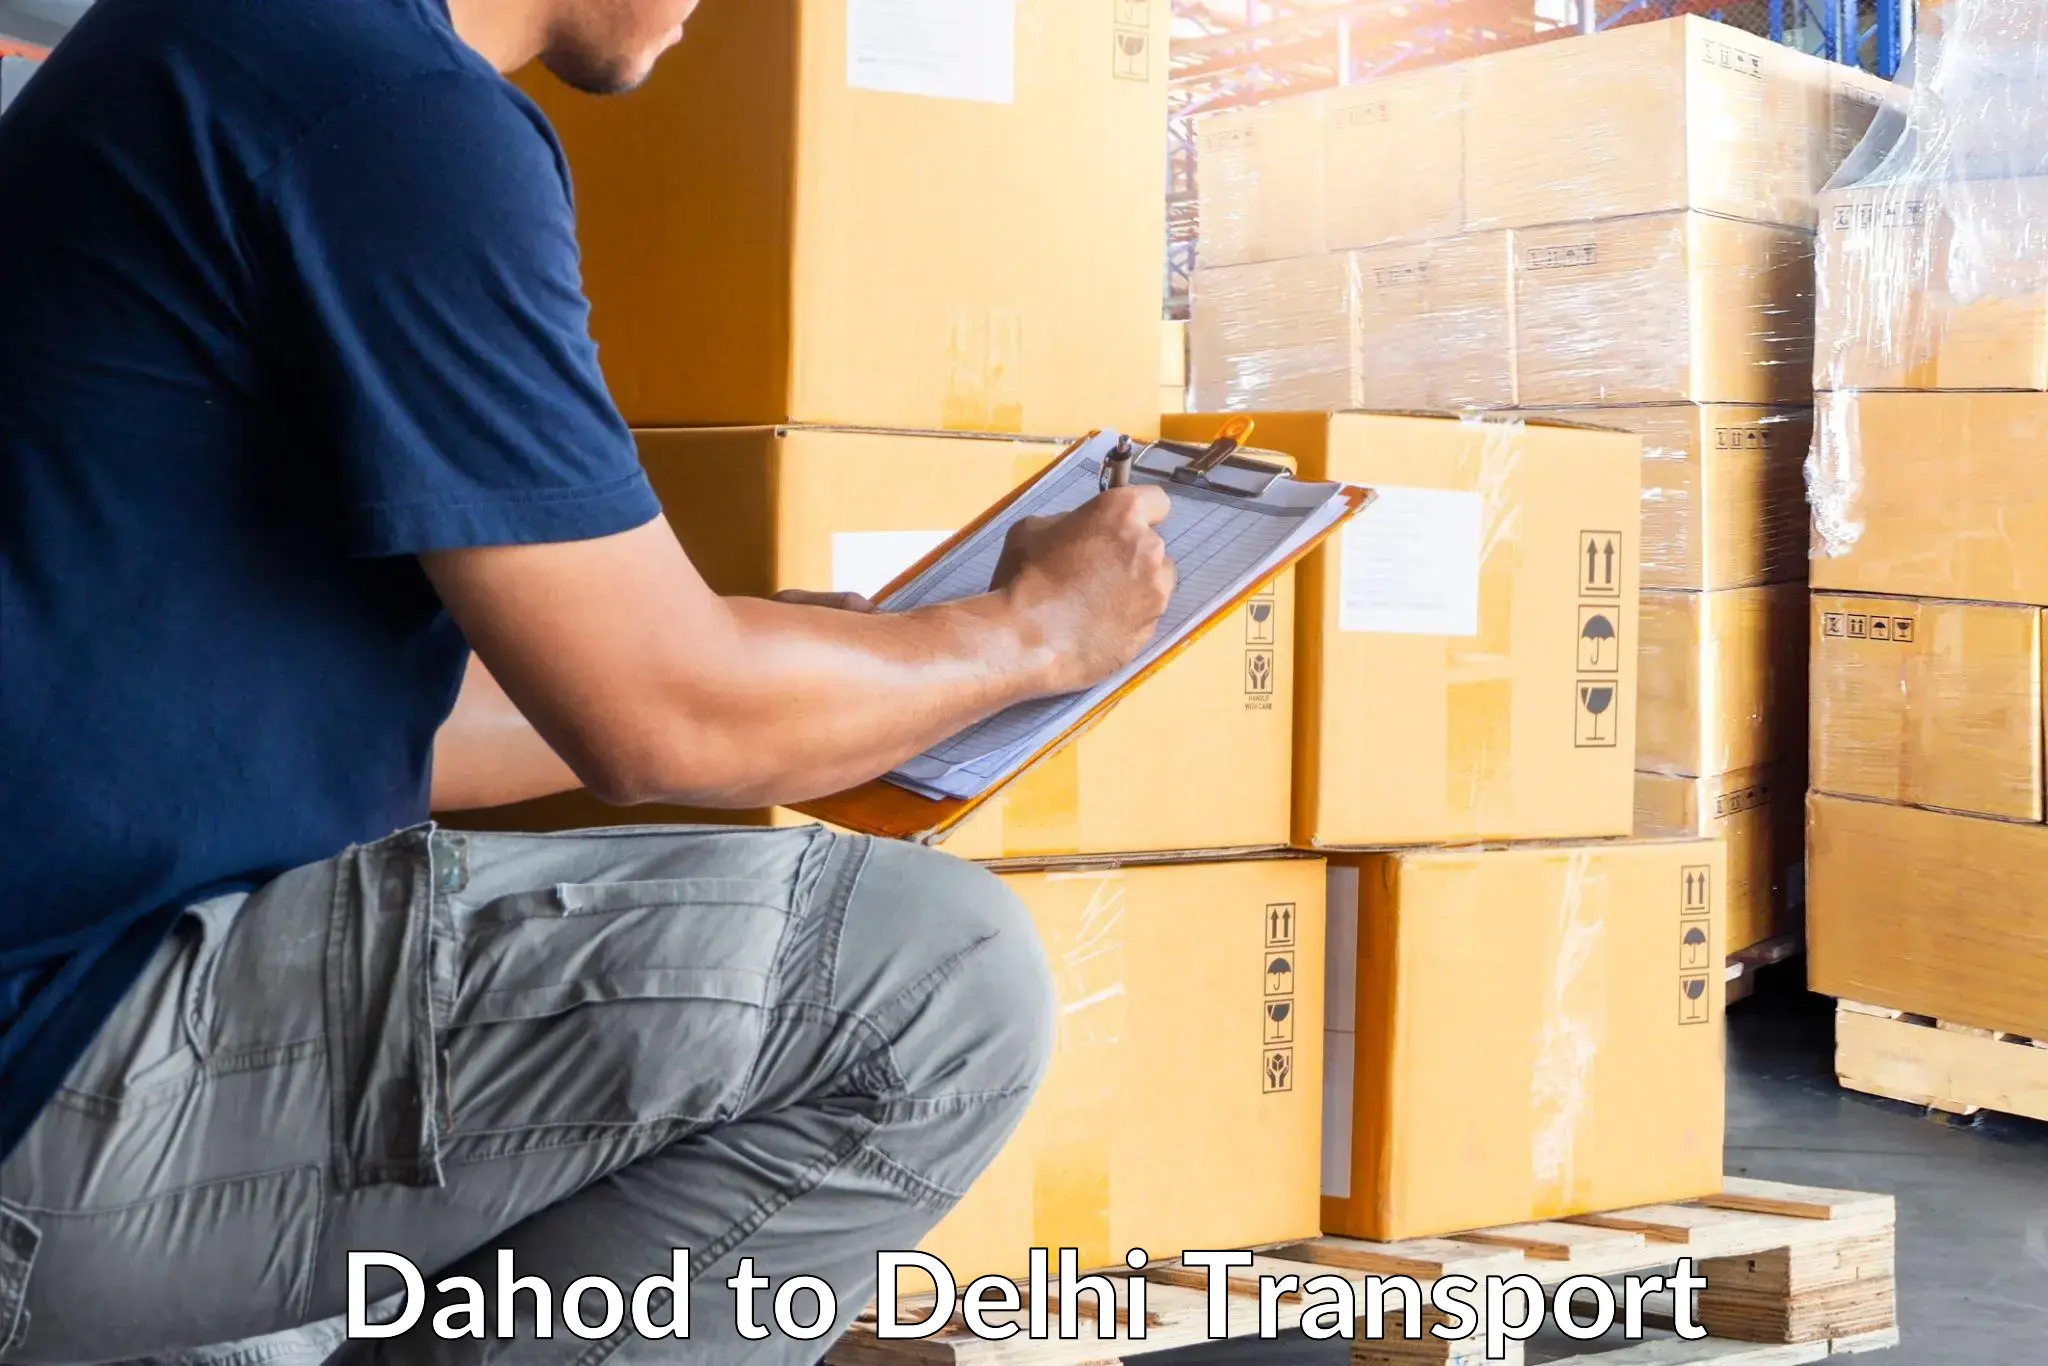 Delivery service Dahod to Delhi